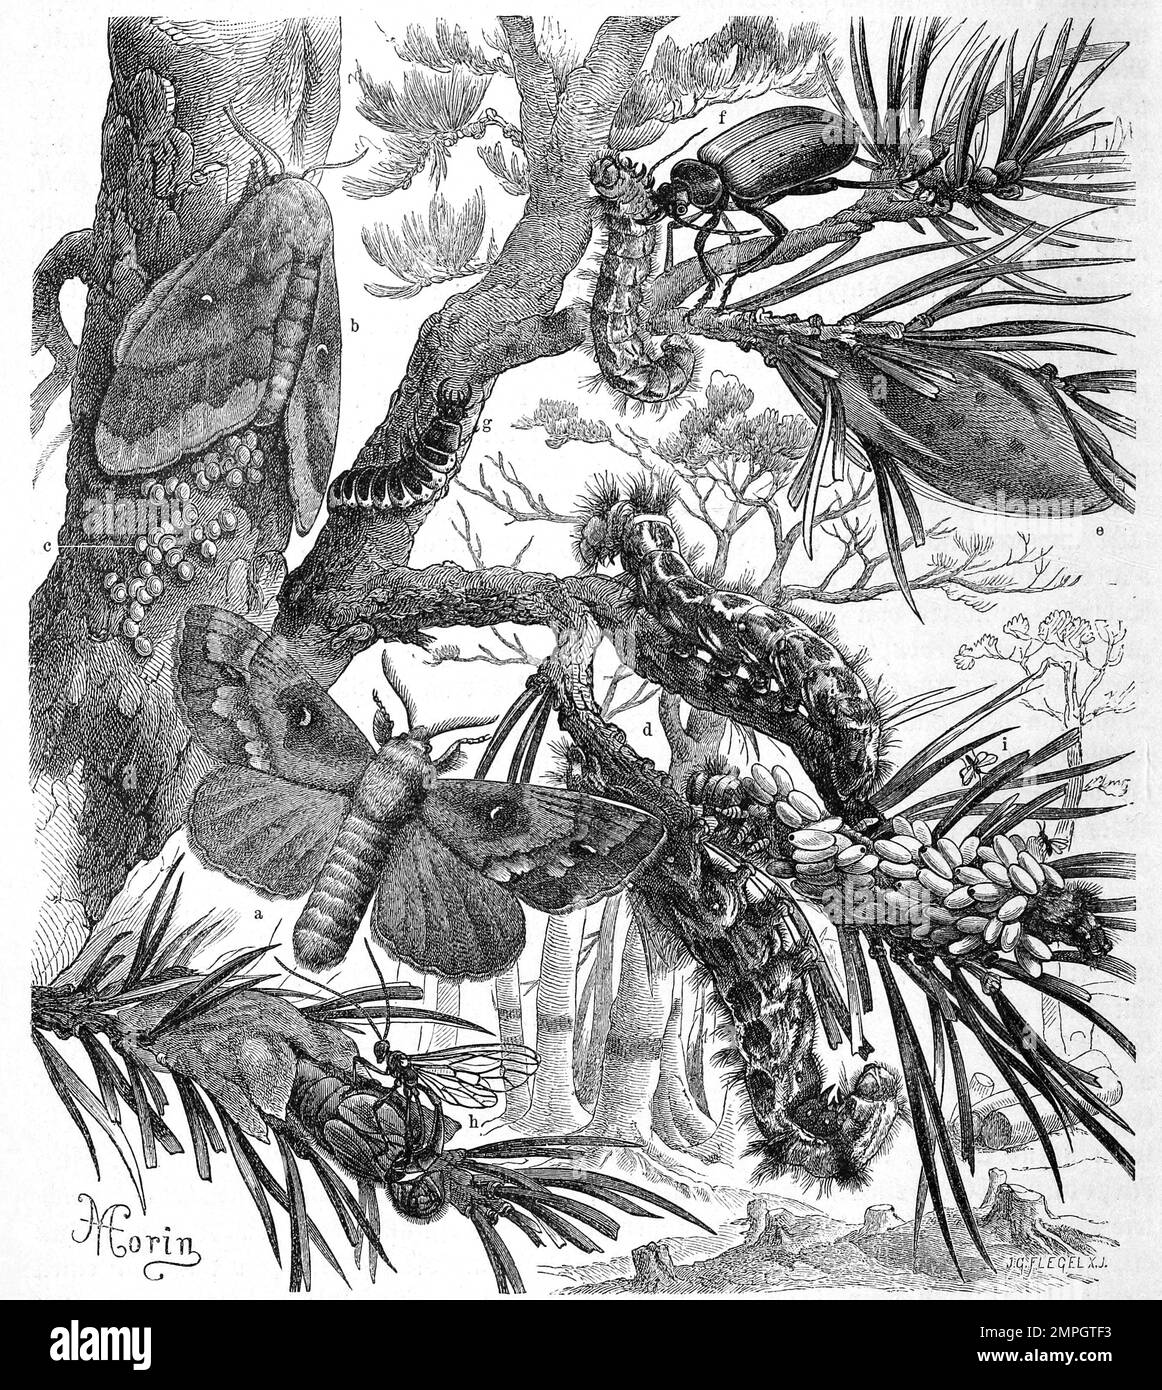 Insekten, Kiefernspinner, Dendrolimus pini ist ein Schmetterling, Nachtfalter aus der Familie der Glucken, in verschiedenen entwicklungsstufen, Historisch, digital restaurierte Reproduktion von einer Vorlage aus dem 19. Jahrhundert Stock Photo